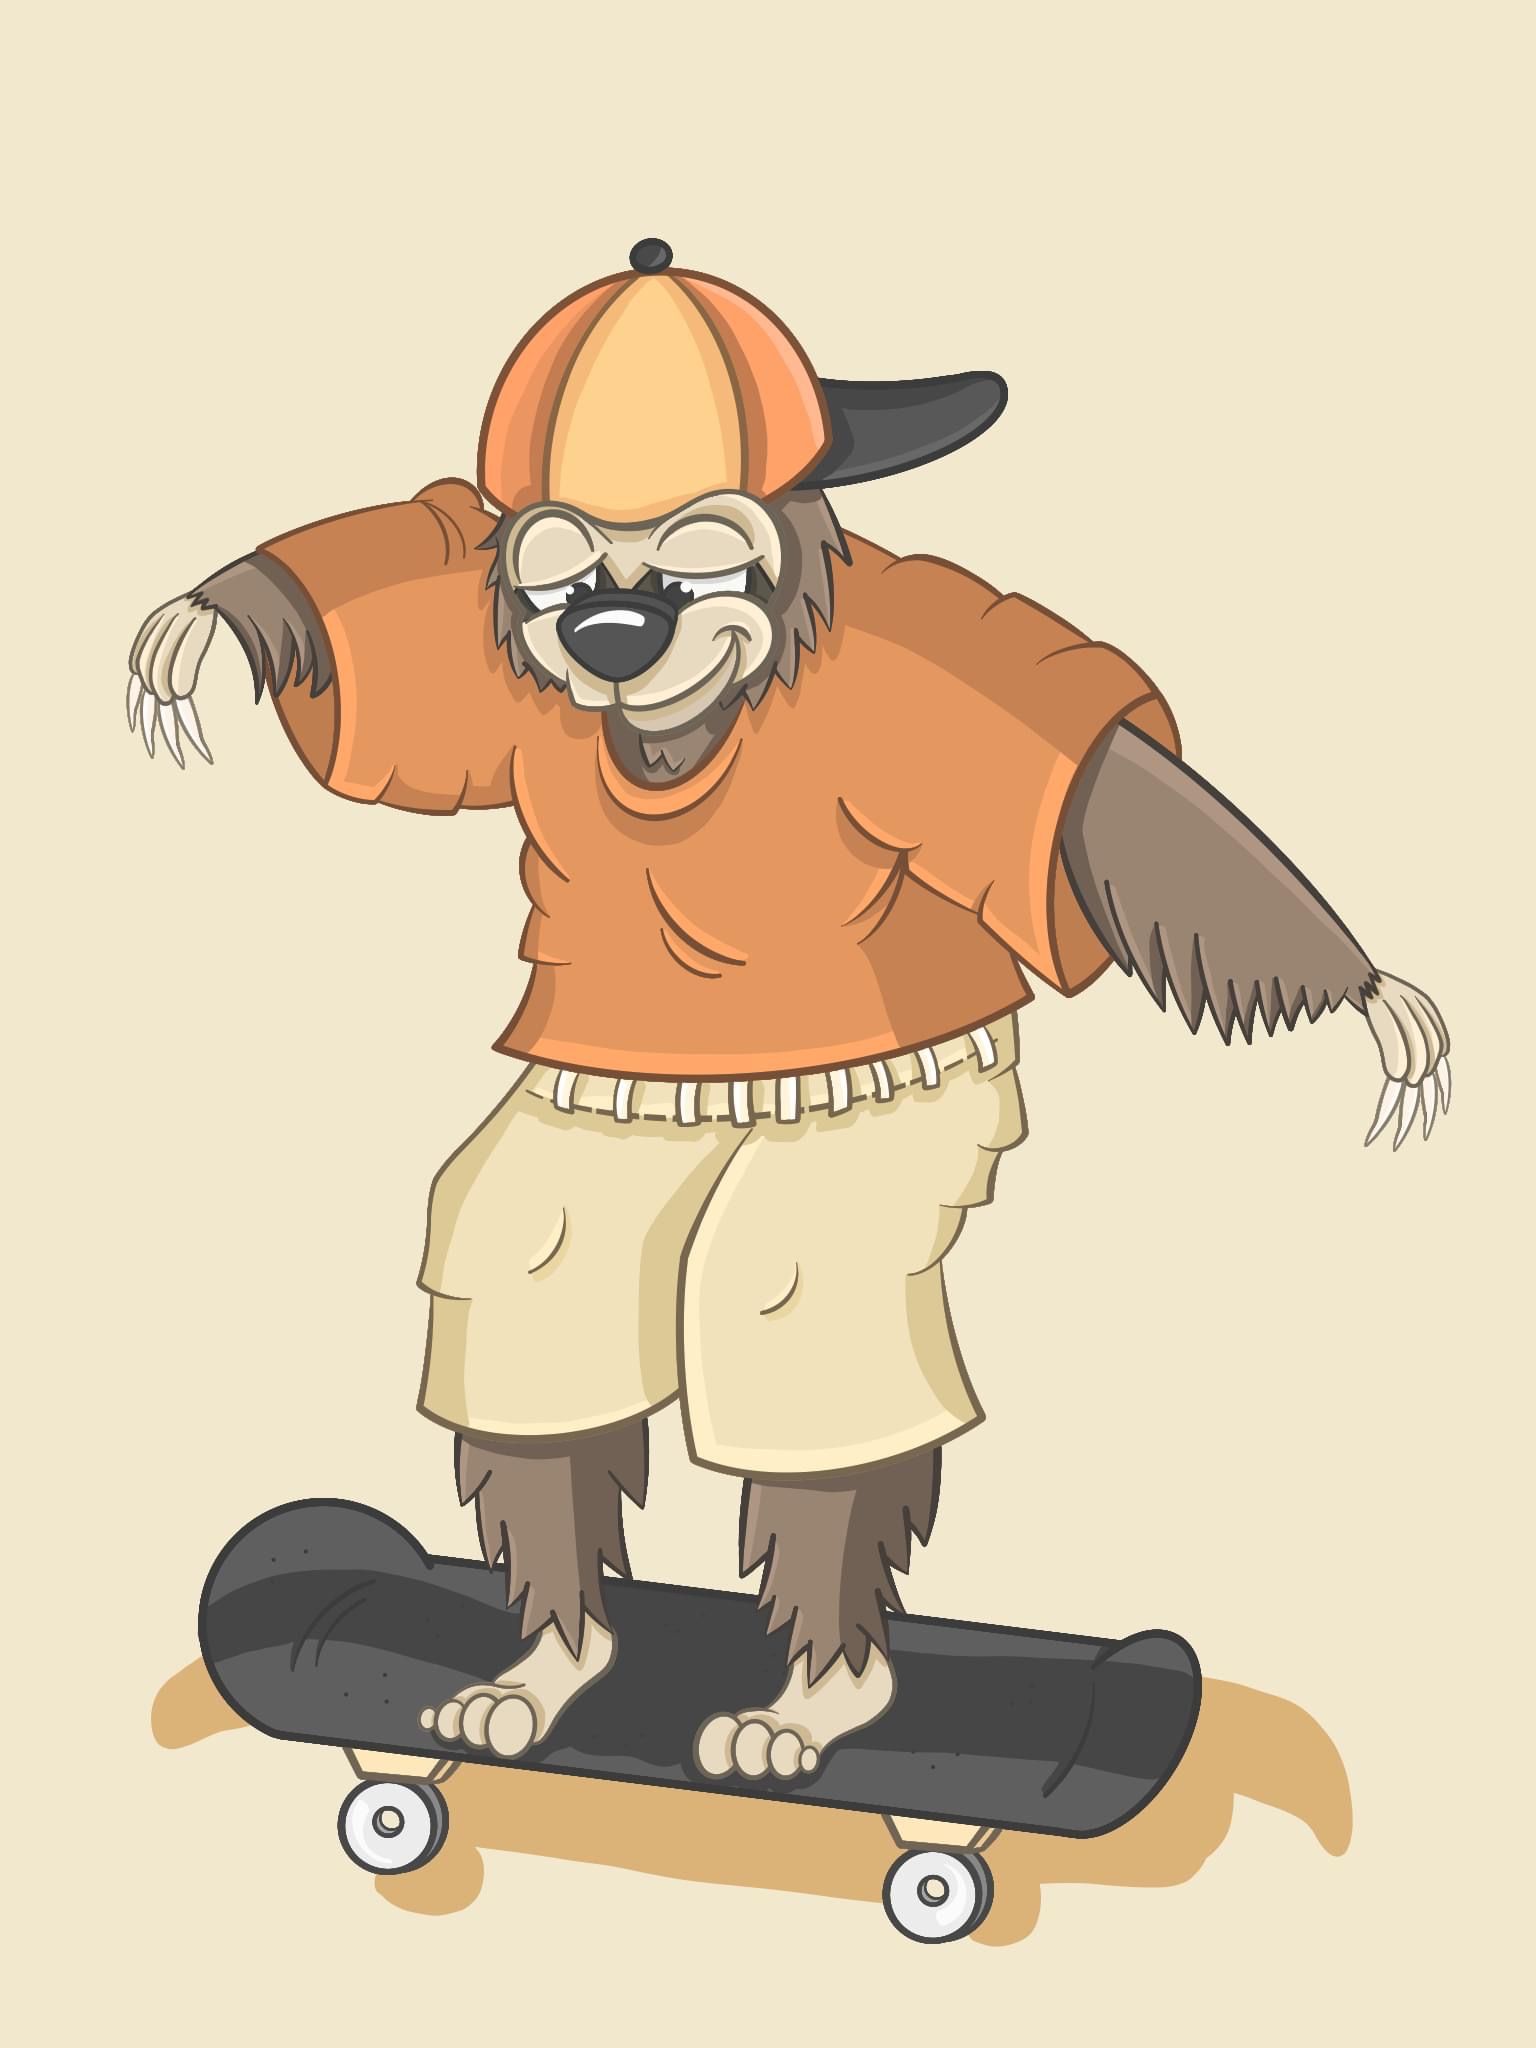 Skateboarding Sloth Character Design